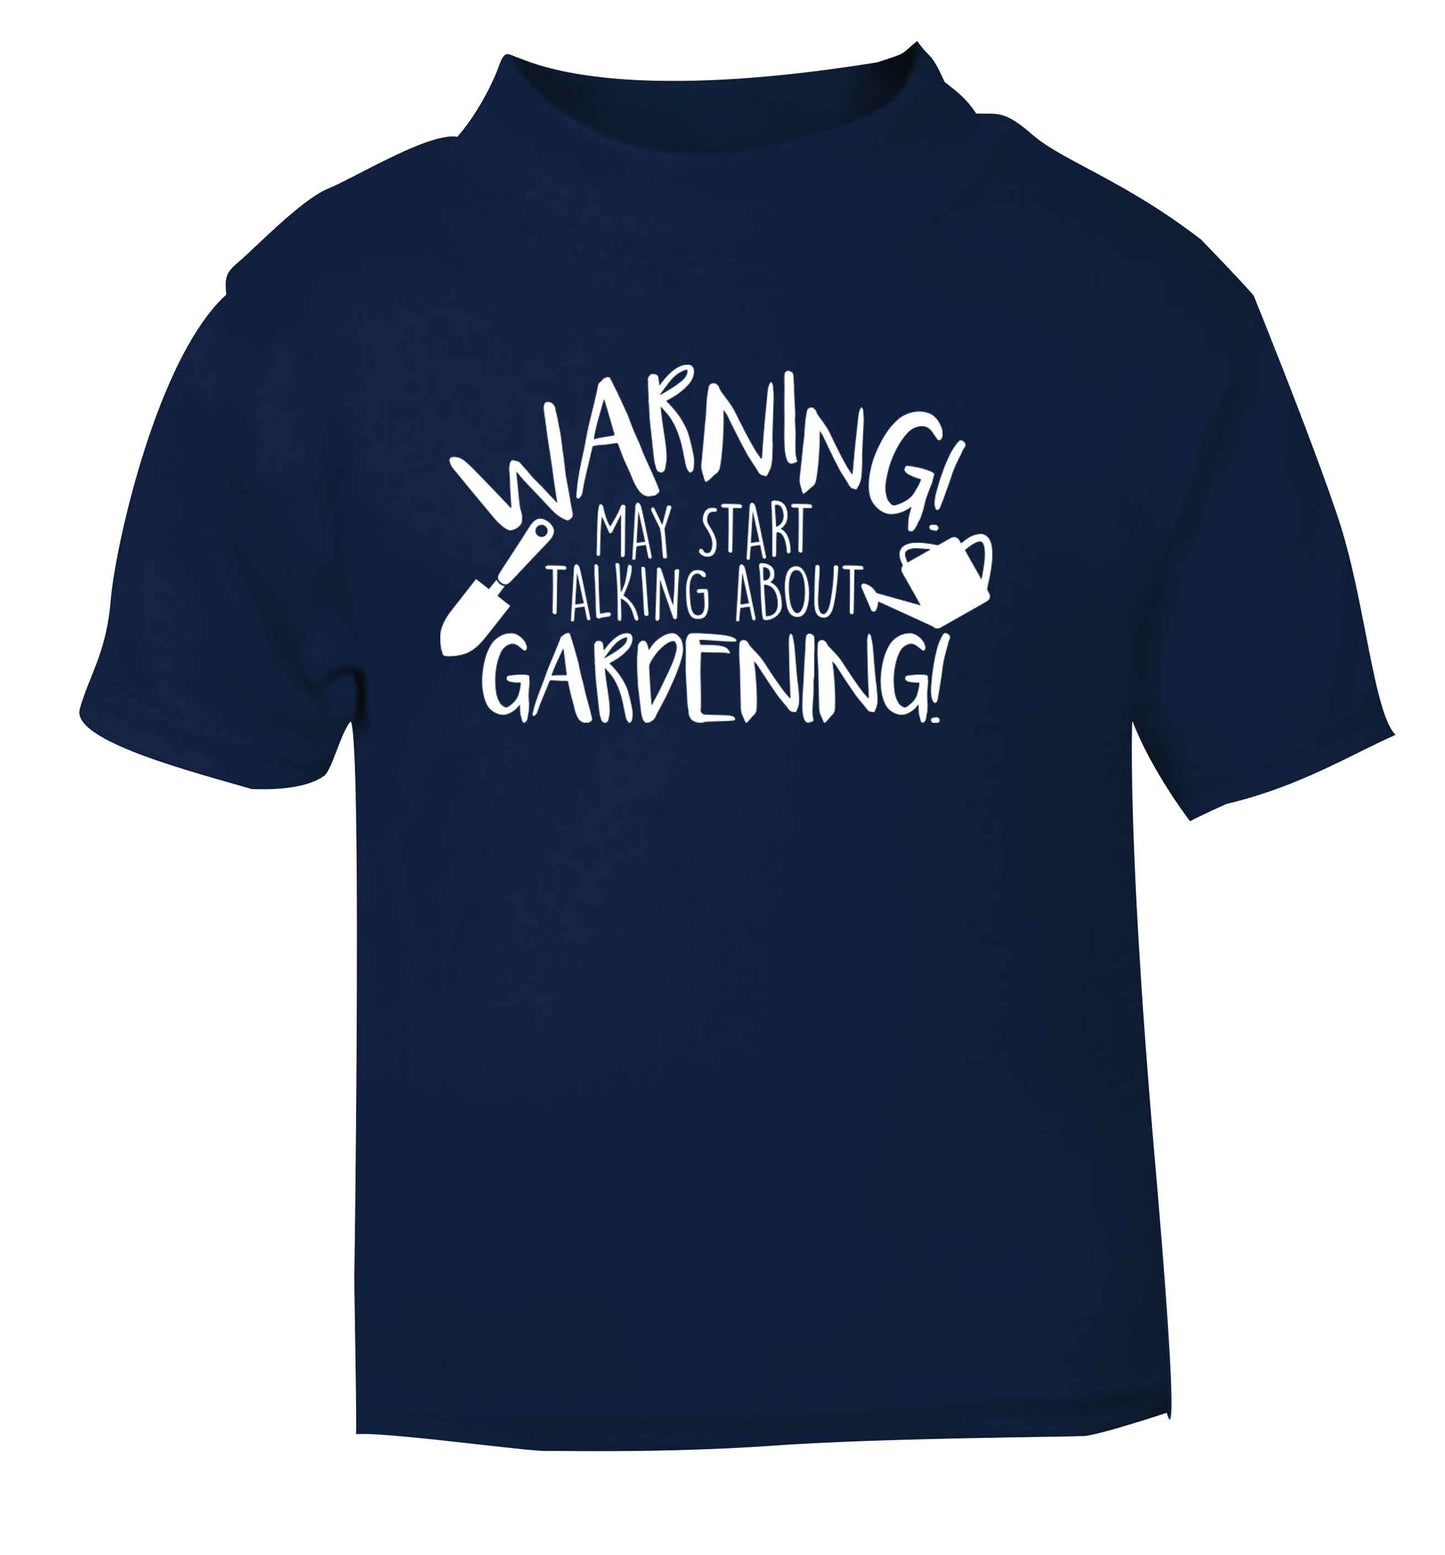 Warning may start talking about gardening navy Baby Toddler Tshirt 2 Years